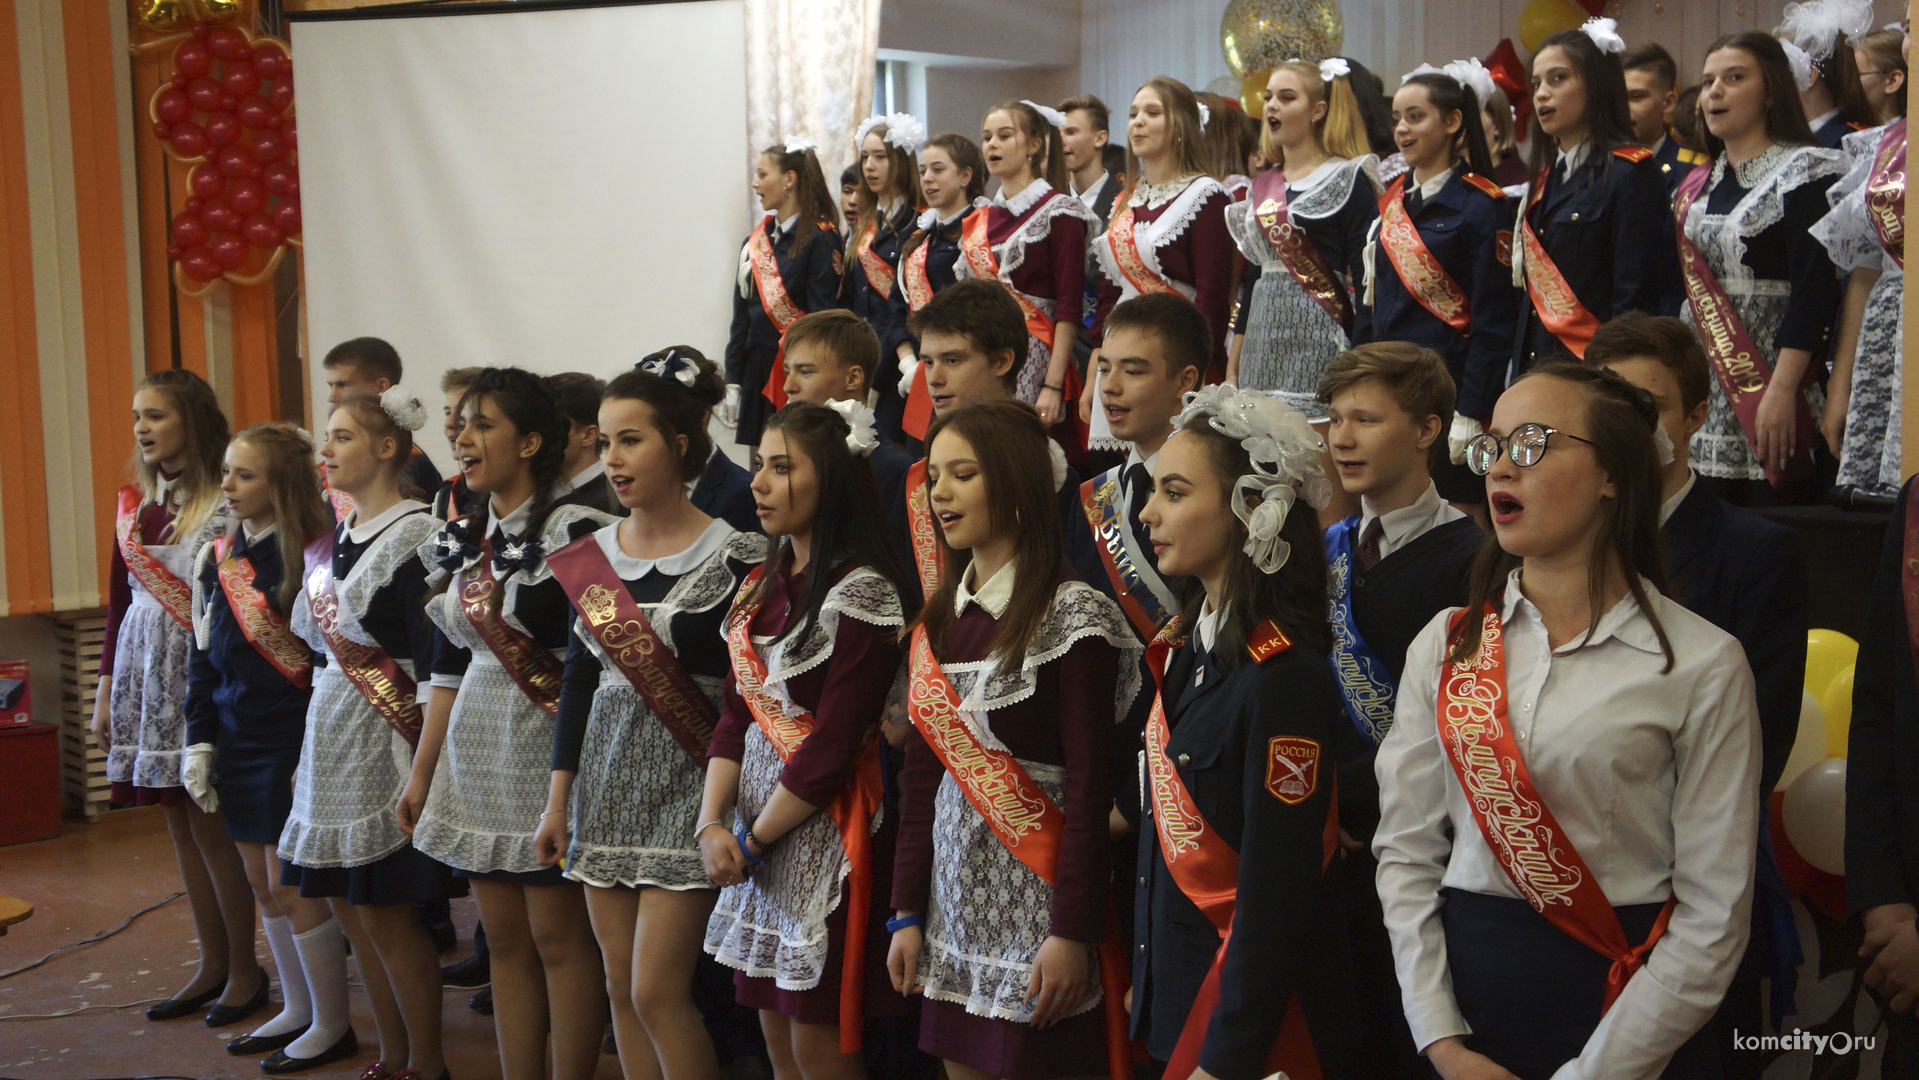 Последние звонки для более трёх тысяч учащихся прозвенели в школах Комсомольска-на-Амуре